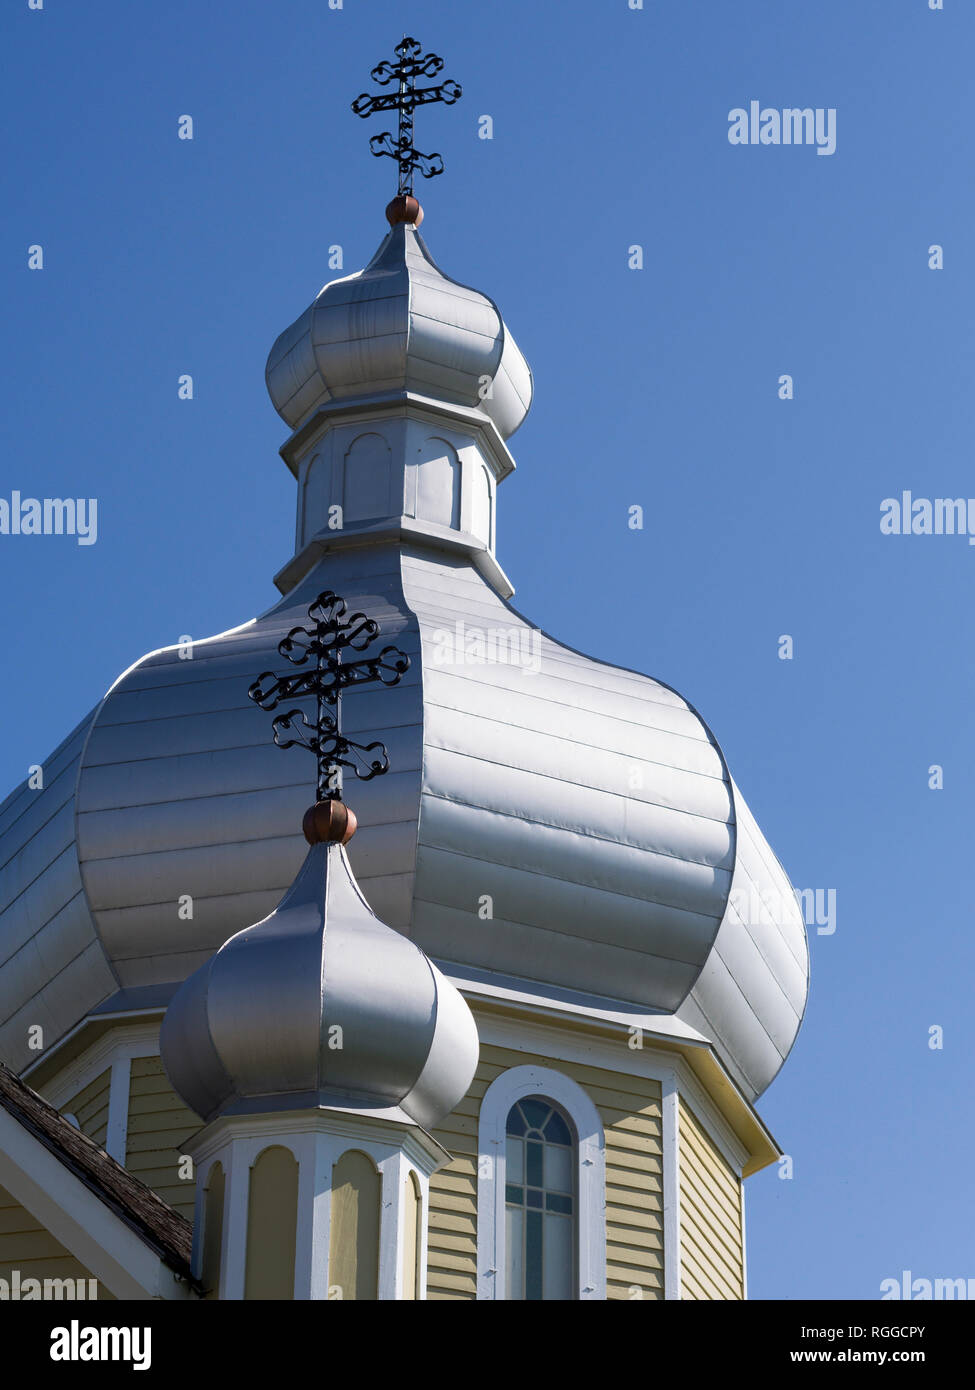 Dômes en oignon de l'Église au musée du folklore ukrainien : deux coupoles surmonté de l'est traverse décorent le toit de l'église qui fait partie de ce patrimoine folk museum près d'Edmonton. Banque D'Images